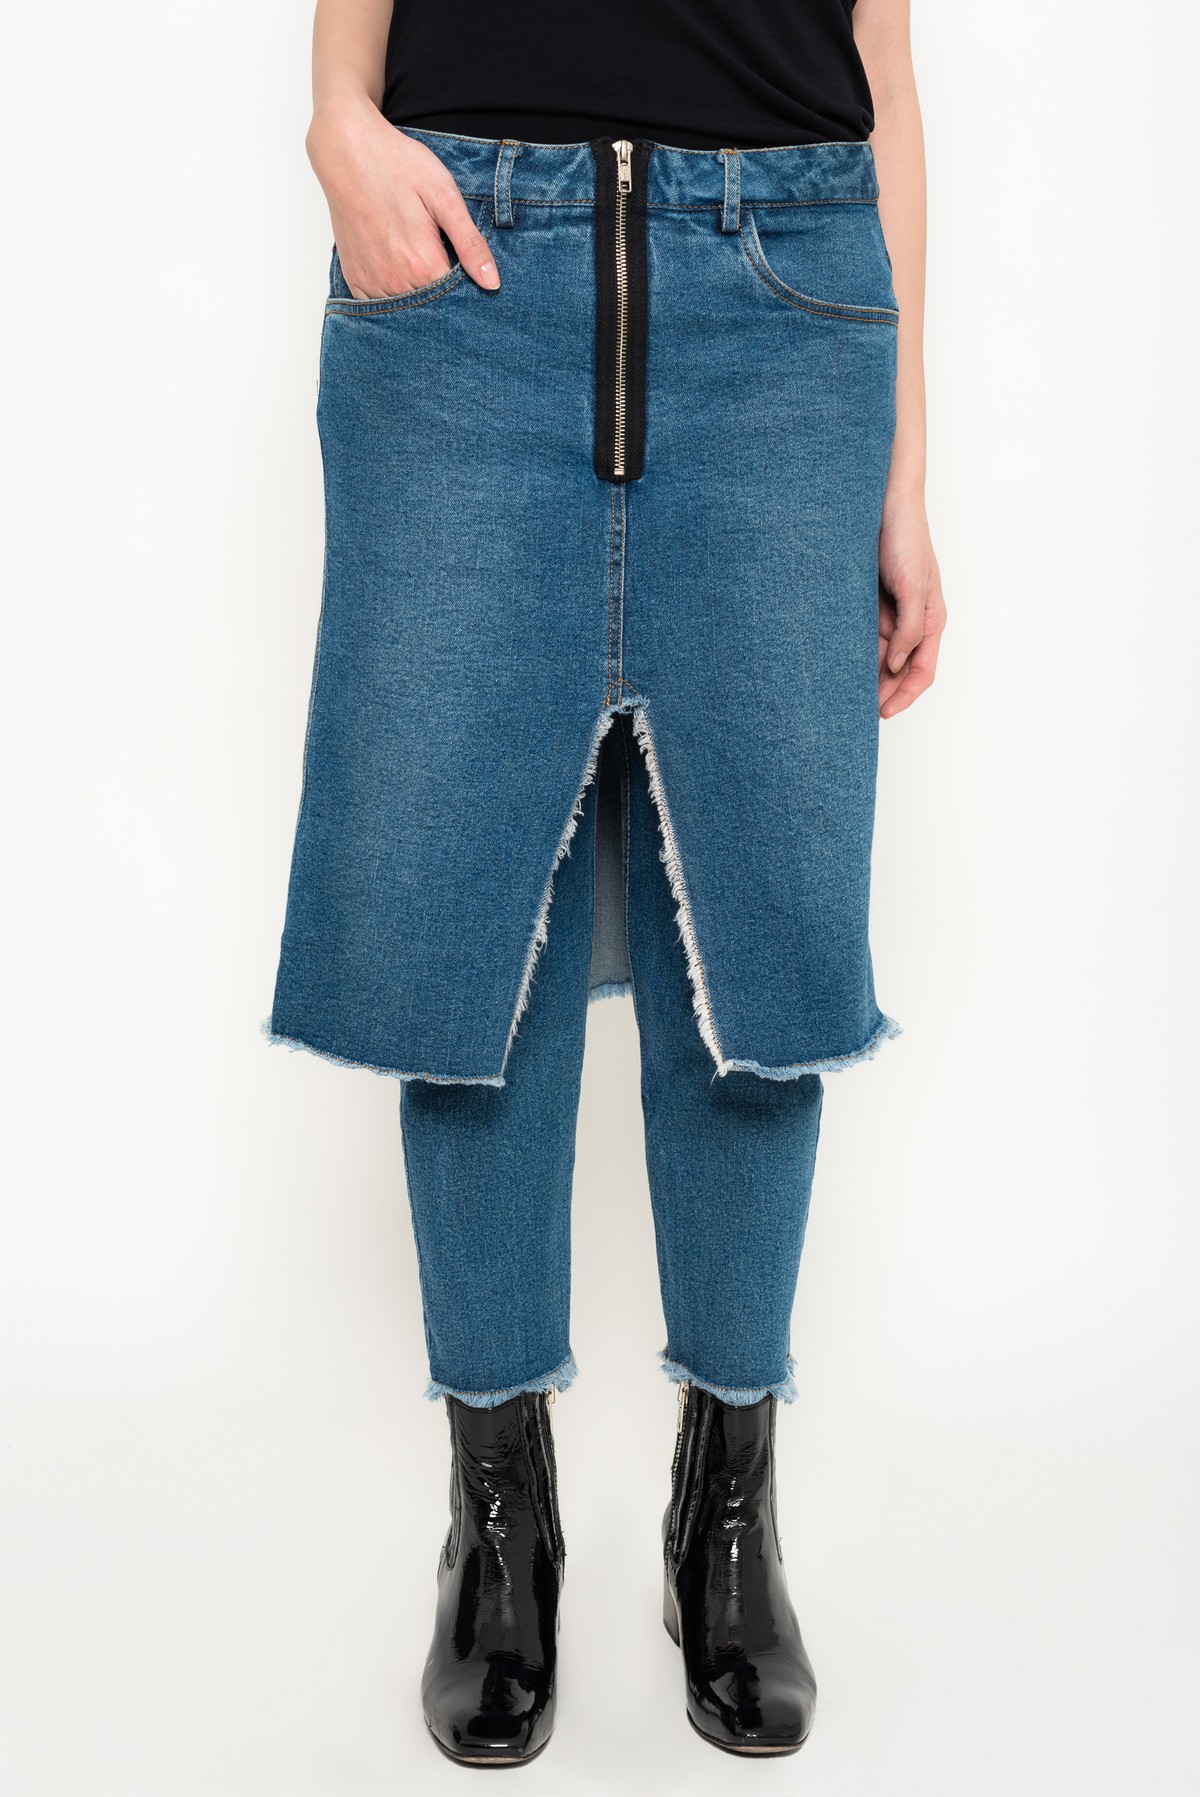 calça jeans ecológico com sobreposição | eco denim five-pocket overlapped pants